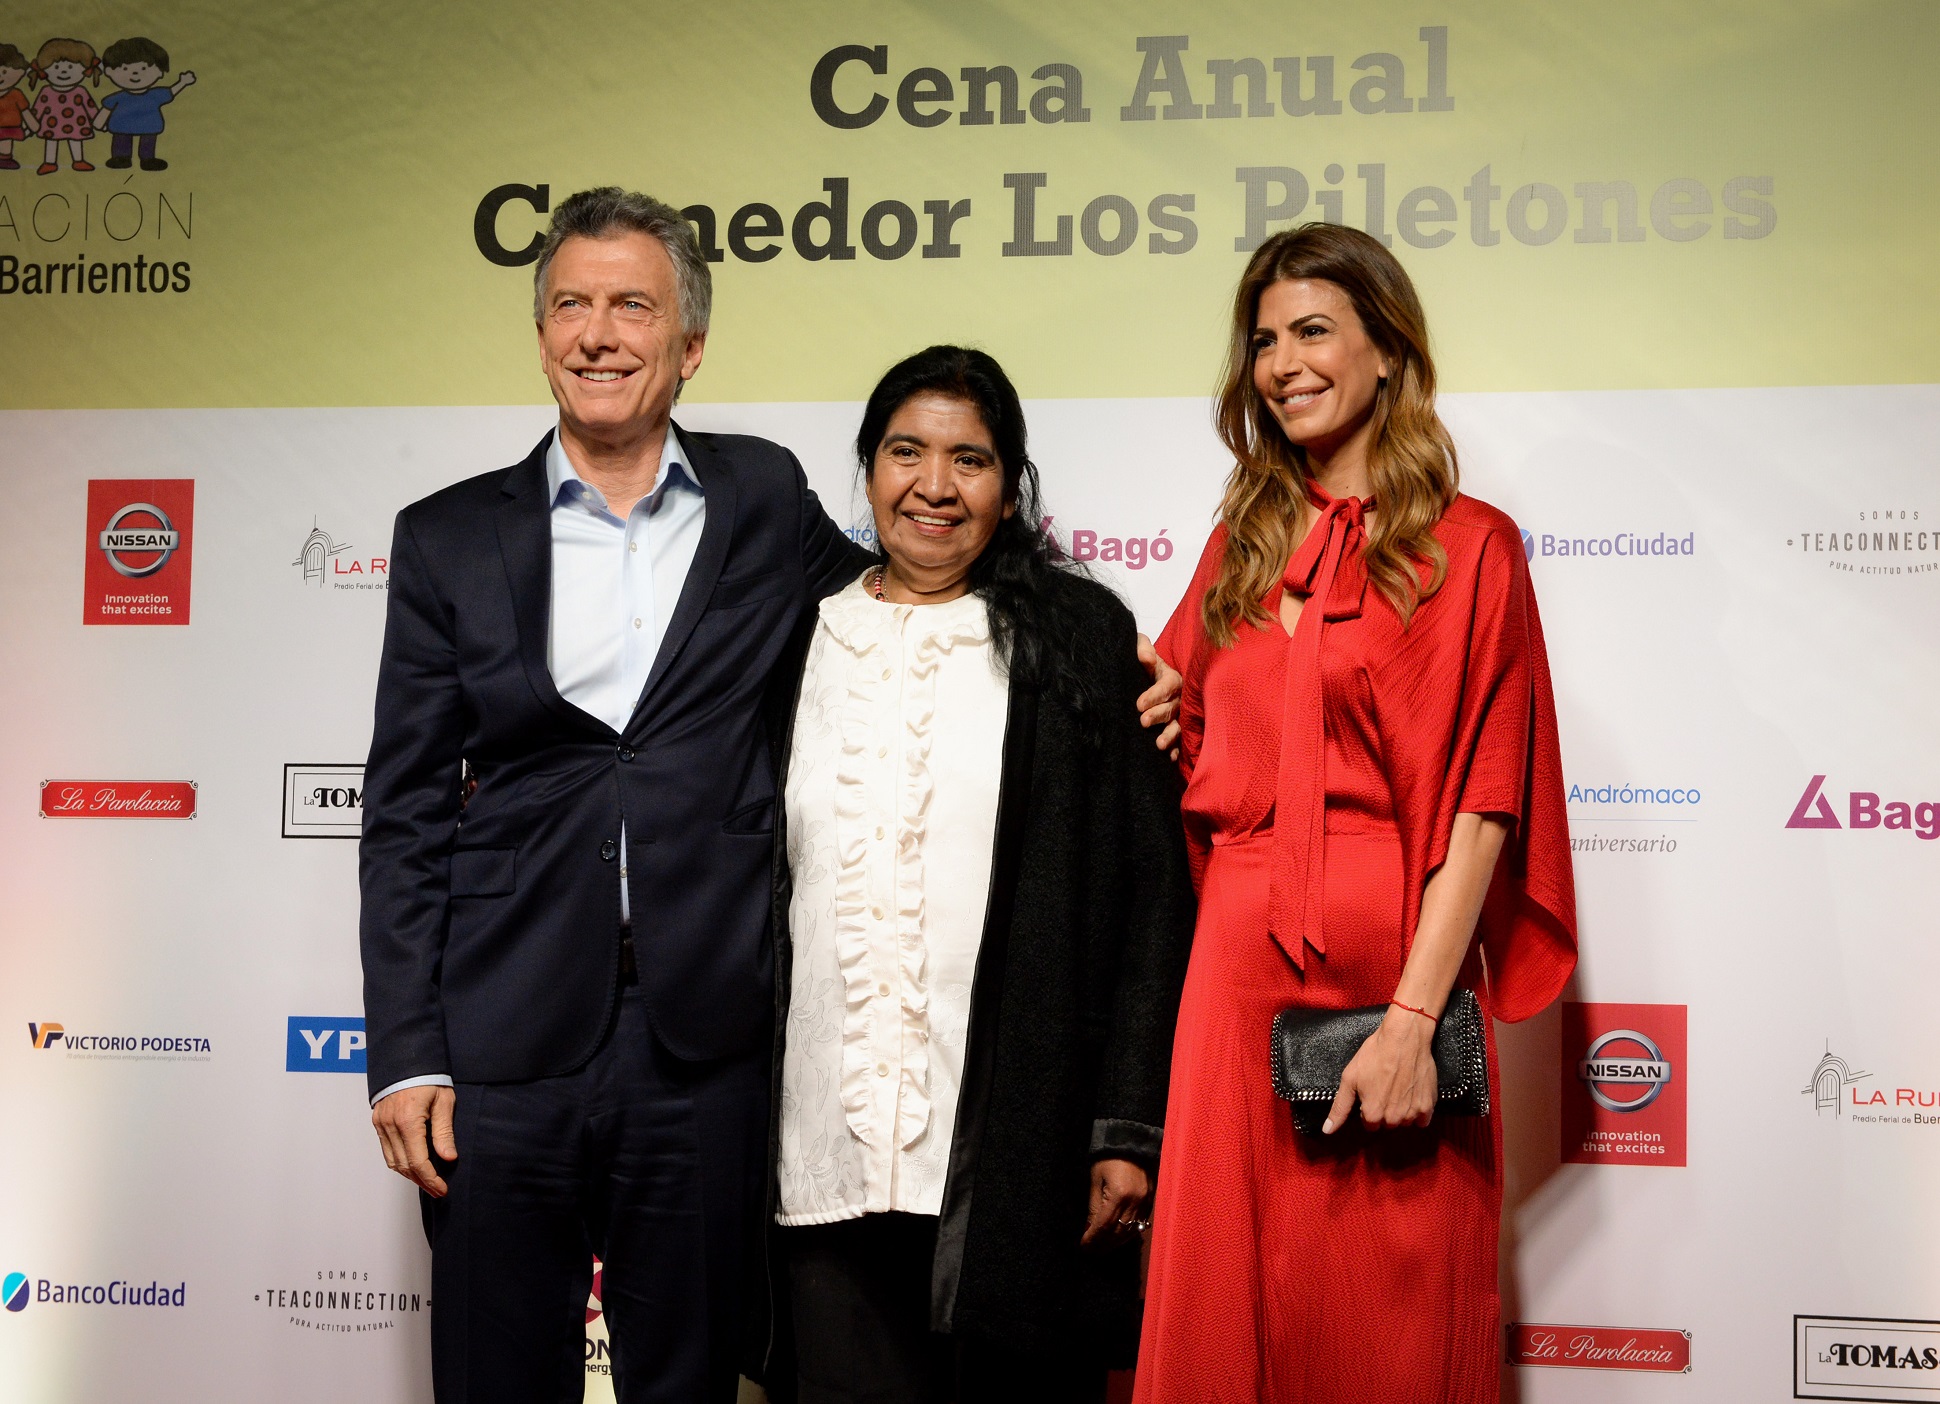 Awada y Macri asistieron a la cena anual de la Fundación de Margarita Barrientos